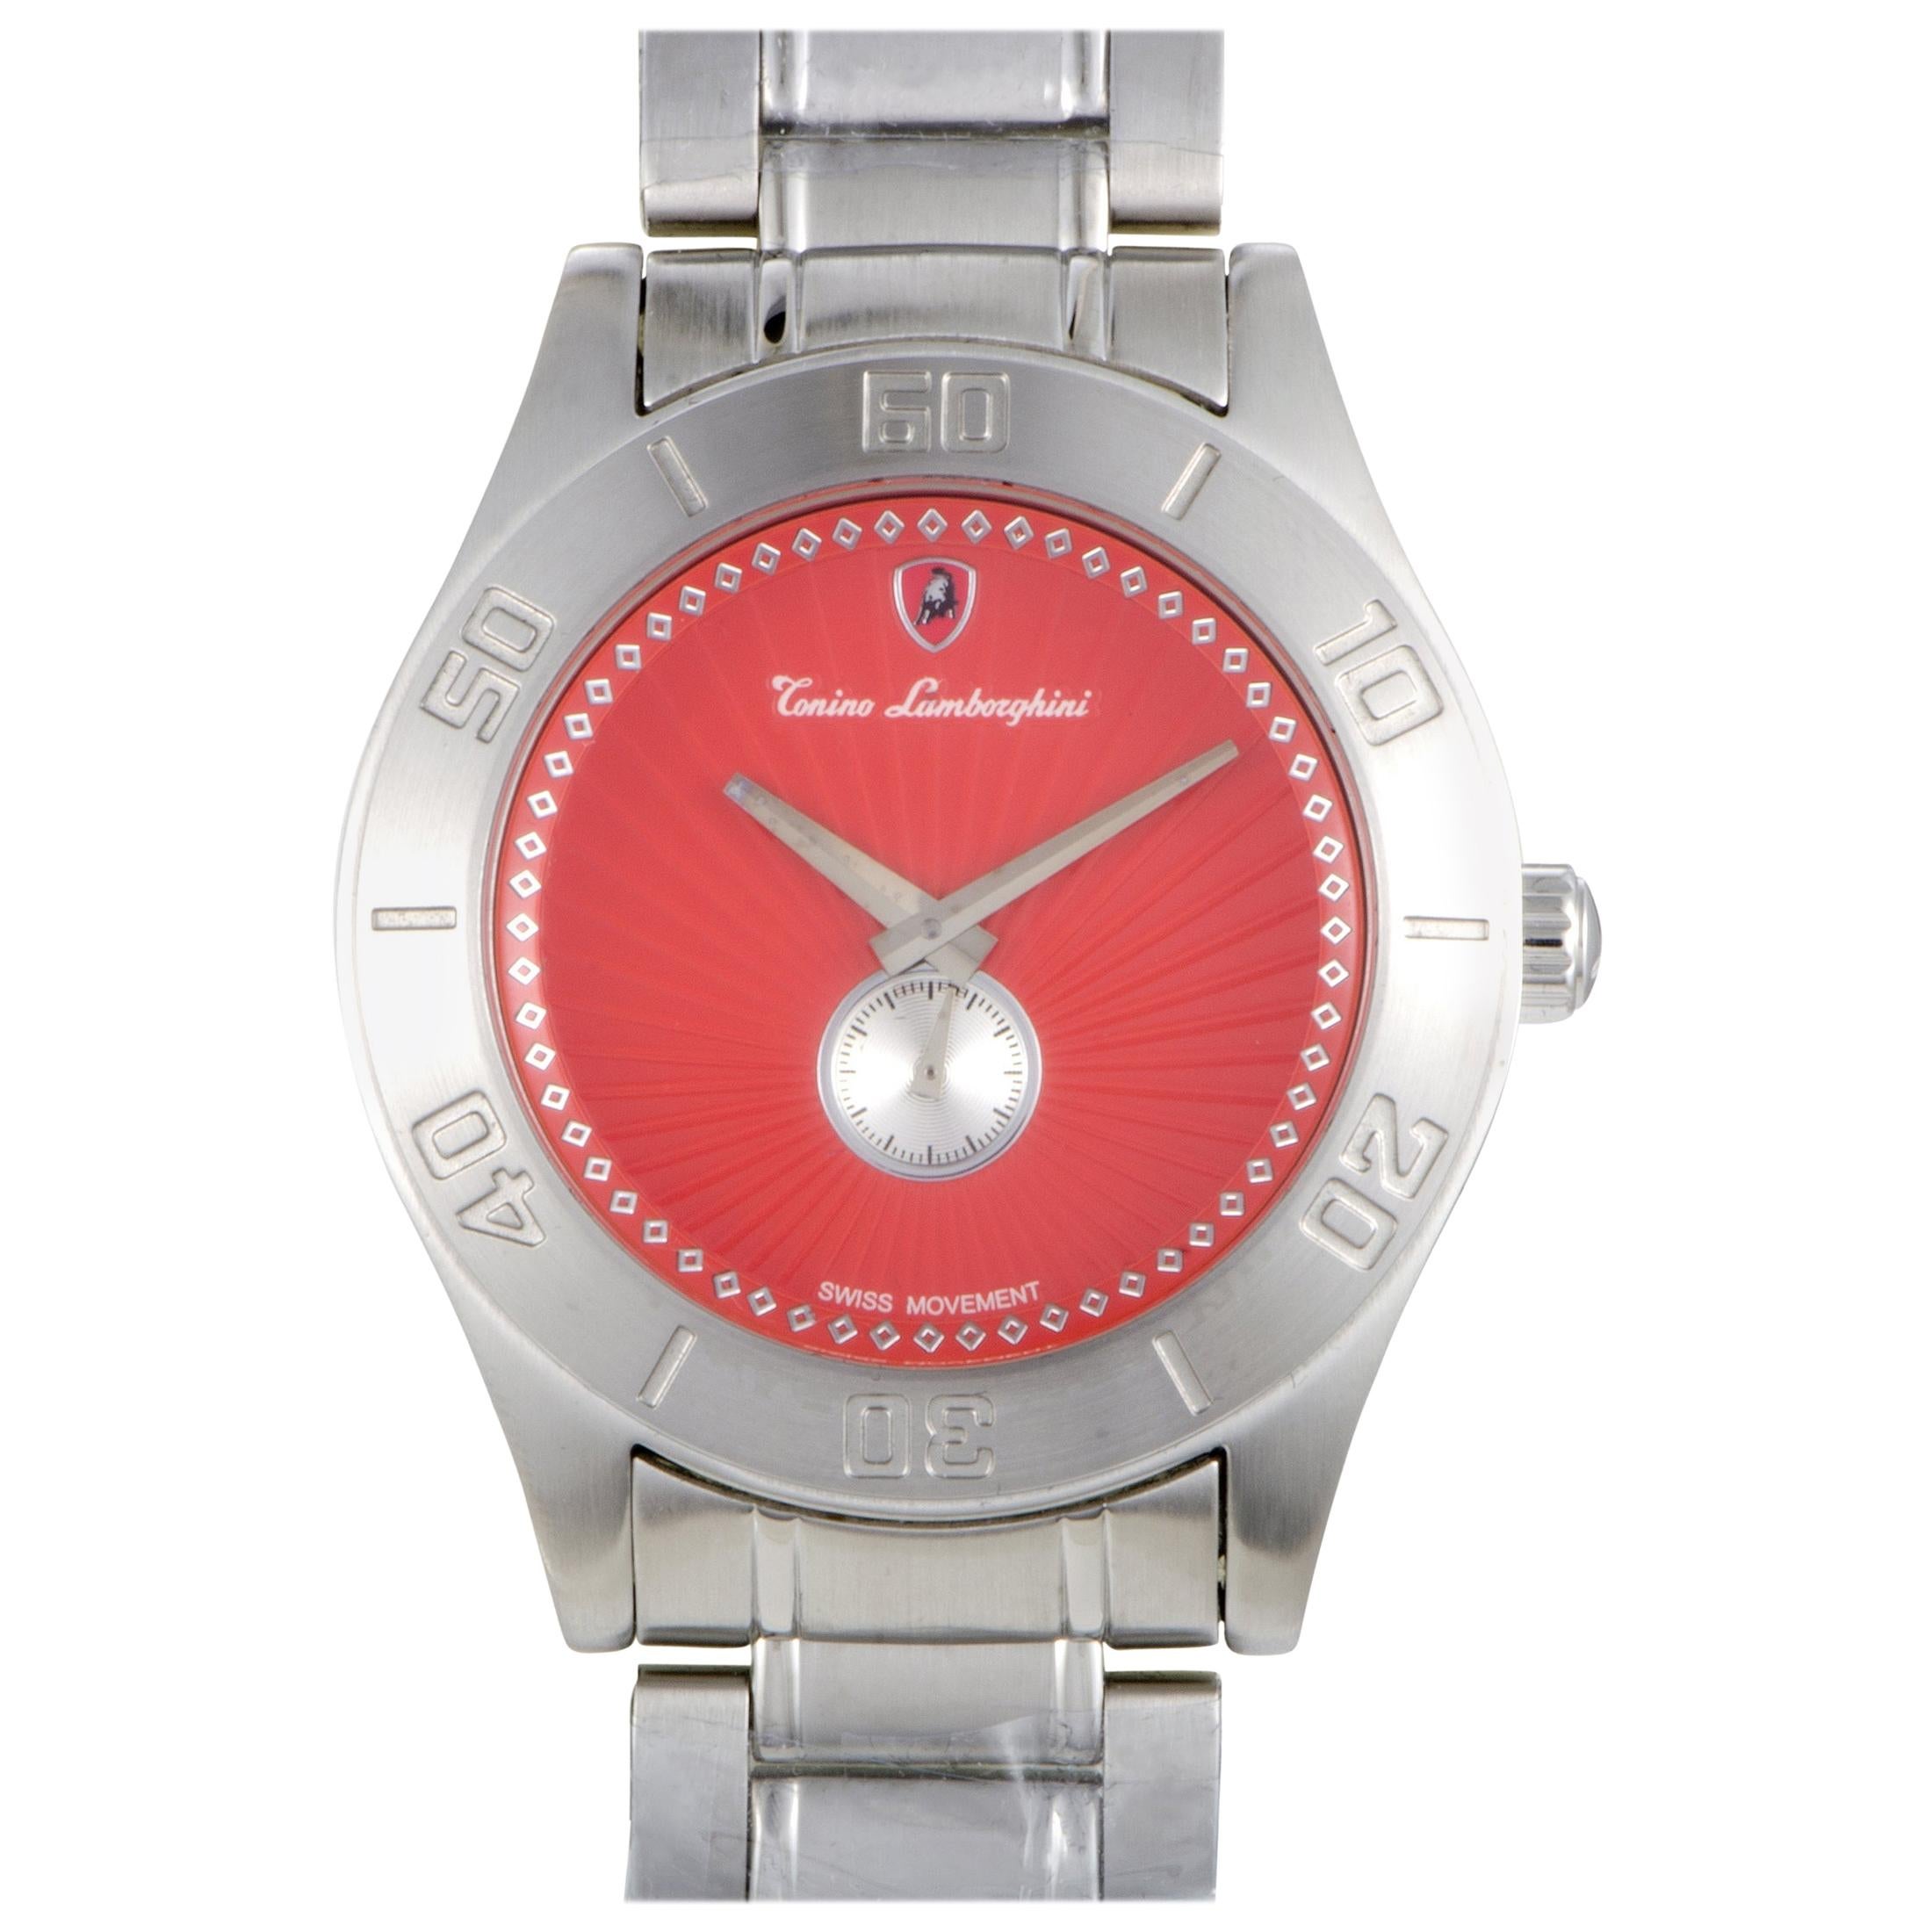 Tonino Lamborghini EN Models Men's Quartz Watch EN045.104